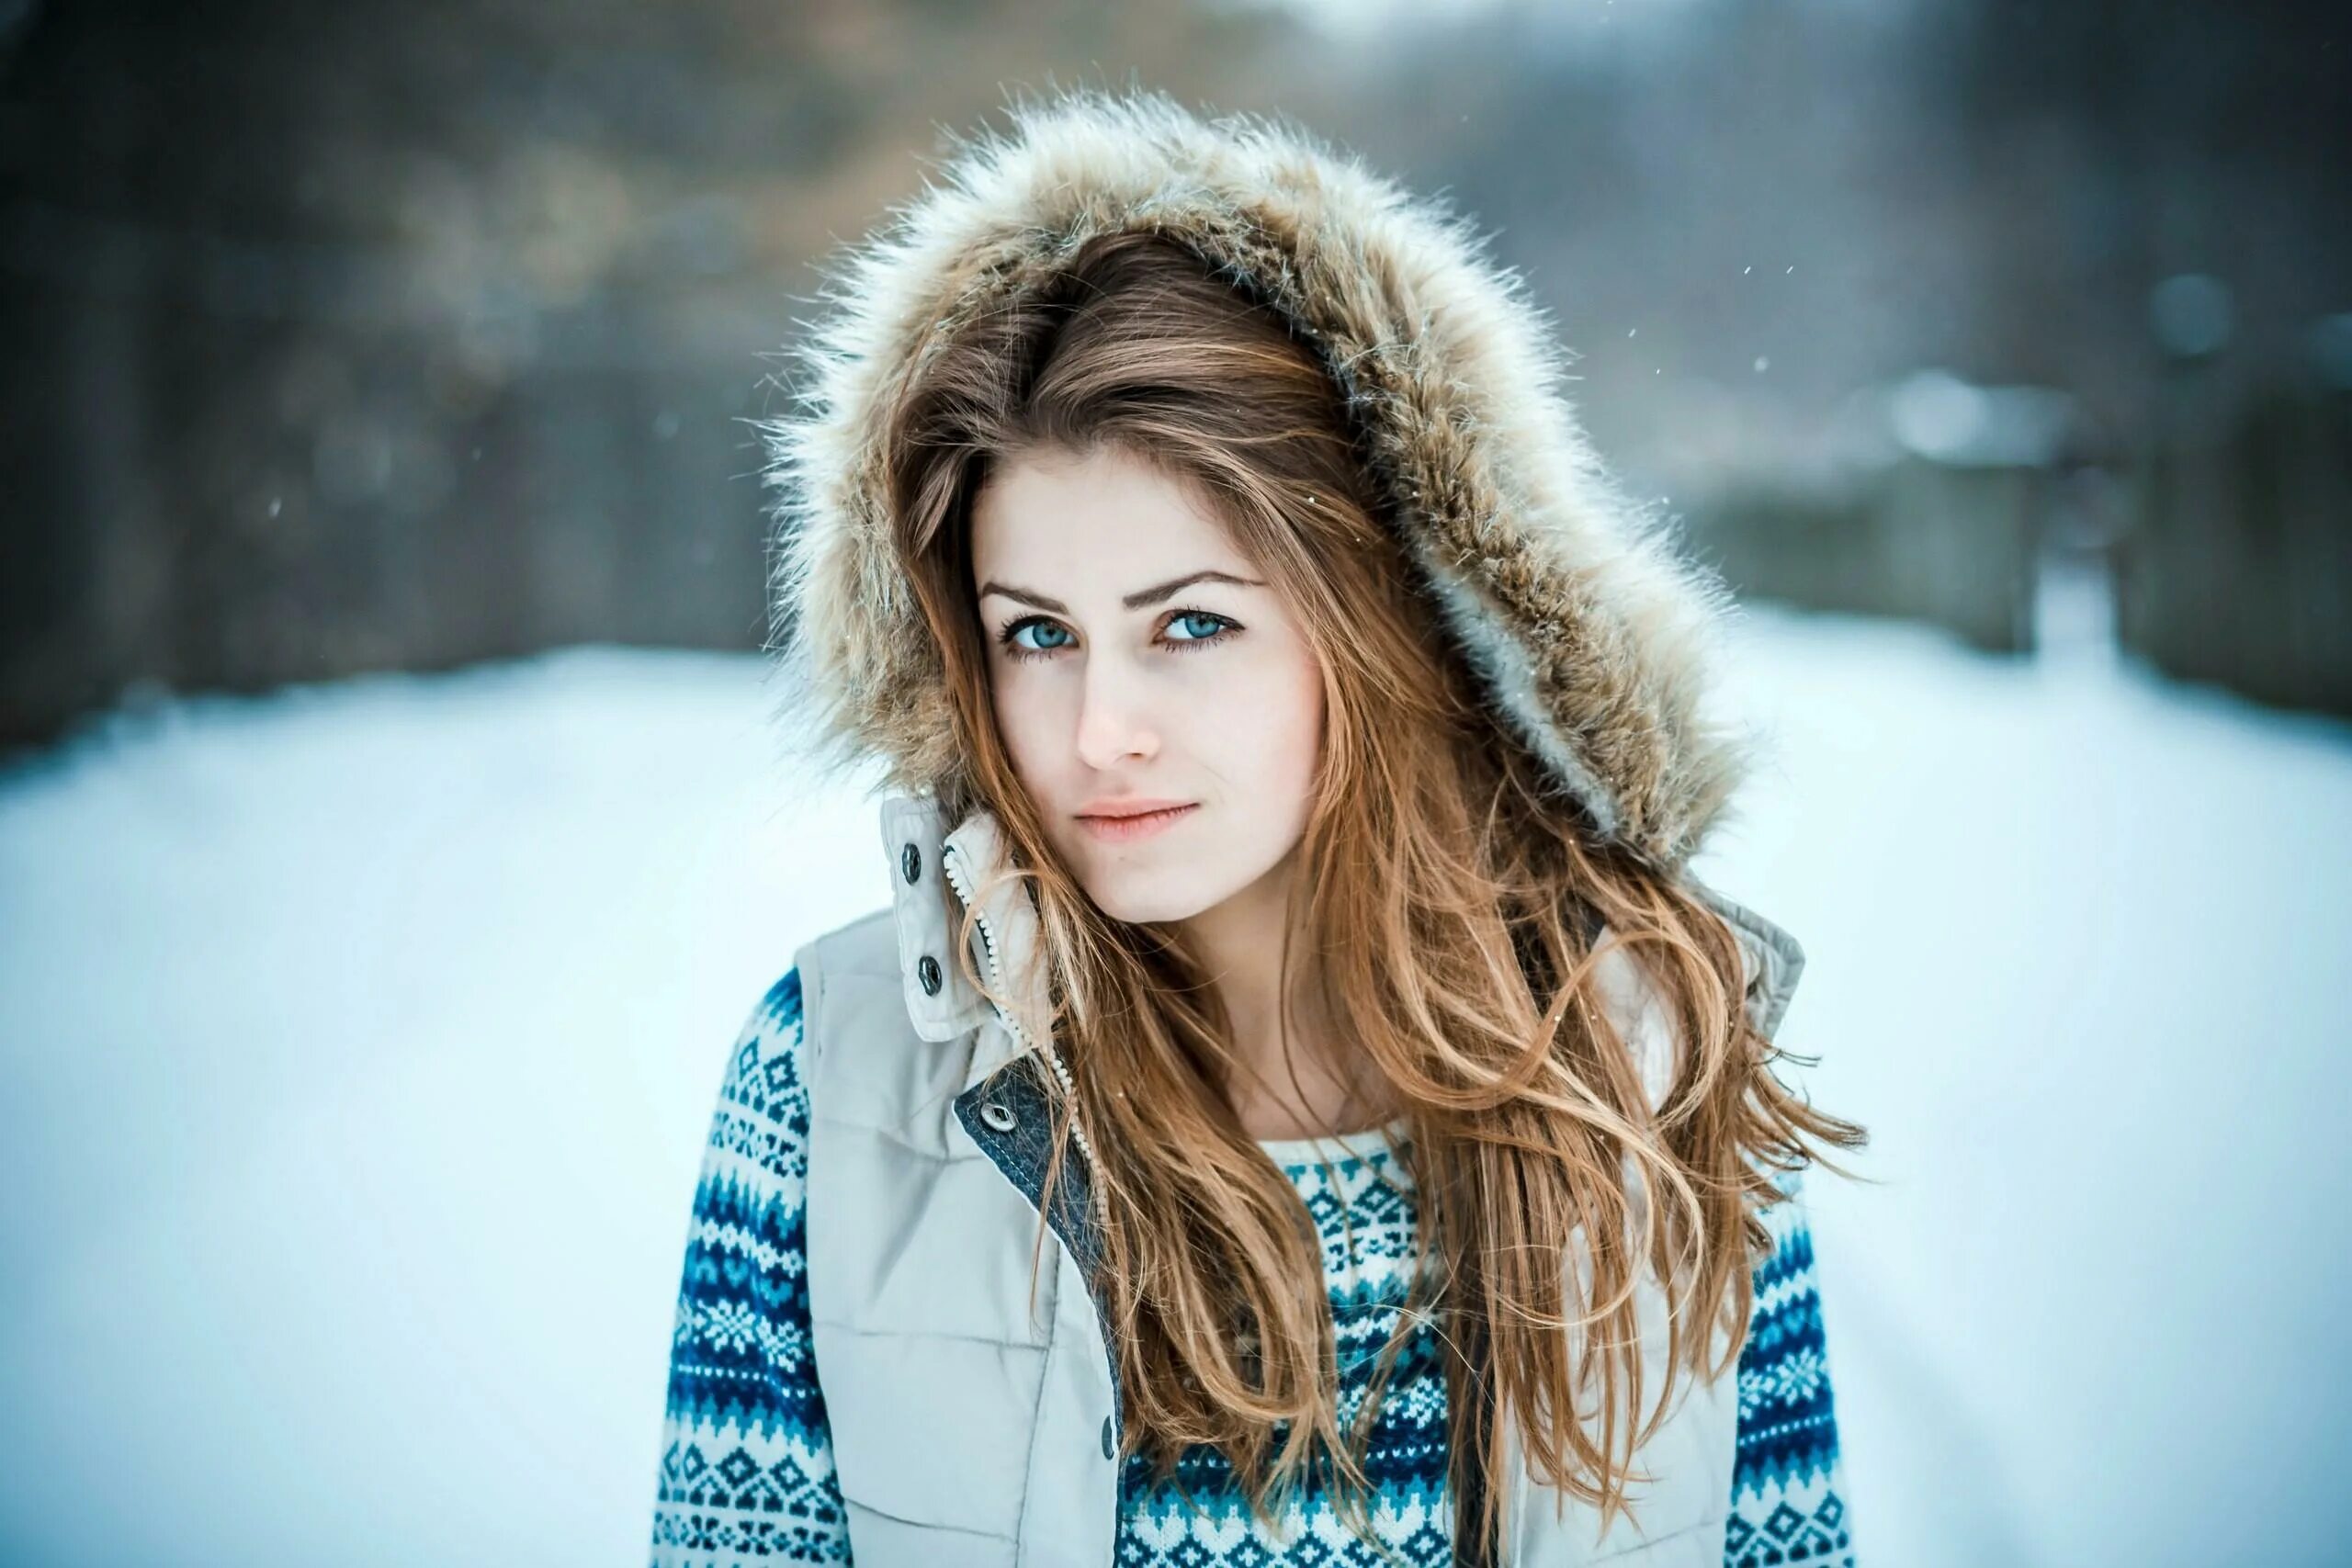 Аляска девушка. Девушка зима. Красивая девушка зима. Зимние фотосессии девушек. Зимние фото девушек.